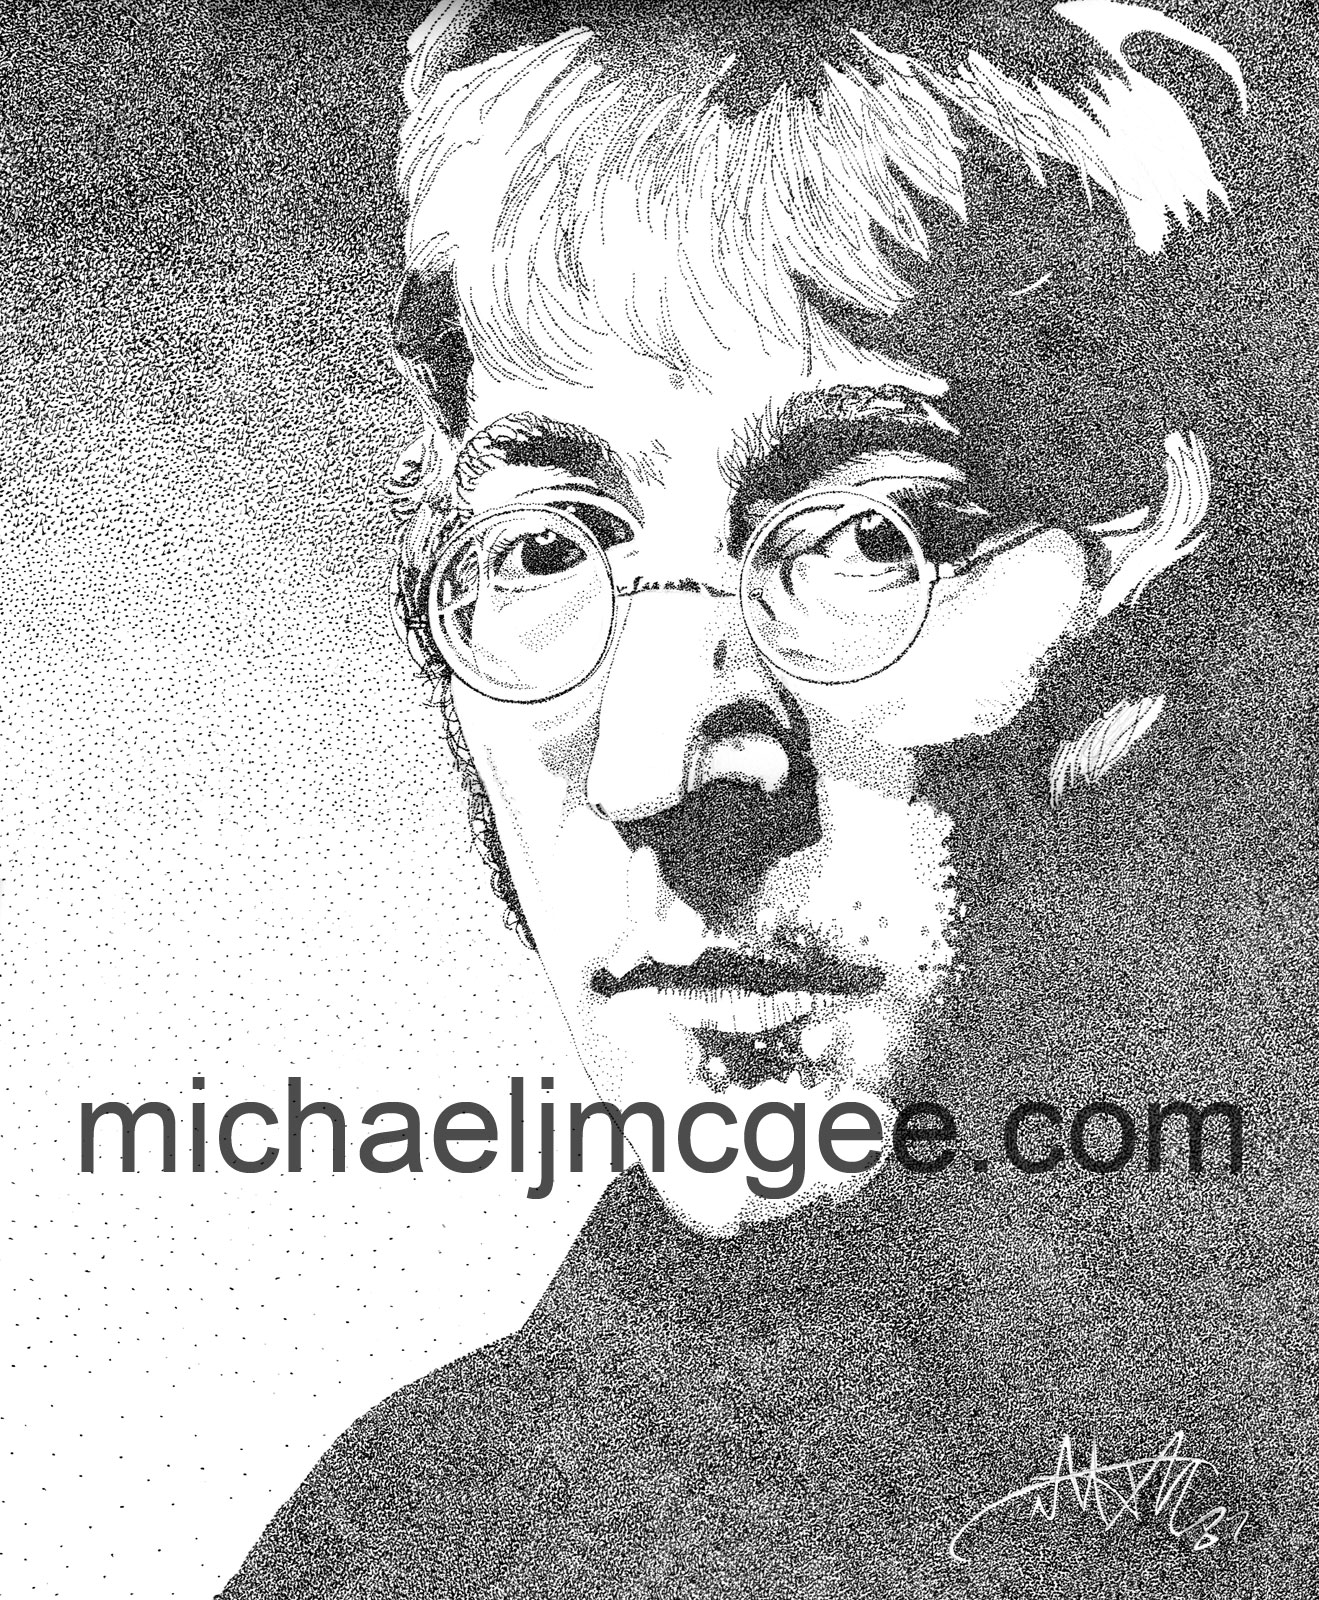 John Lennon / MJM Artworks / michaeljmcgee.com